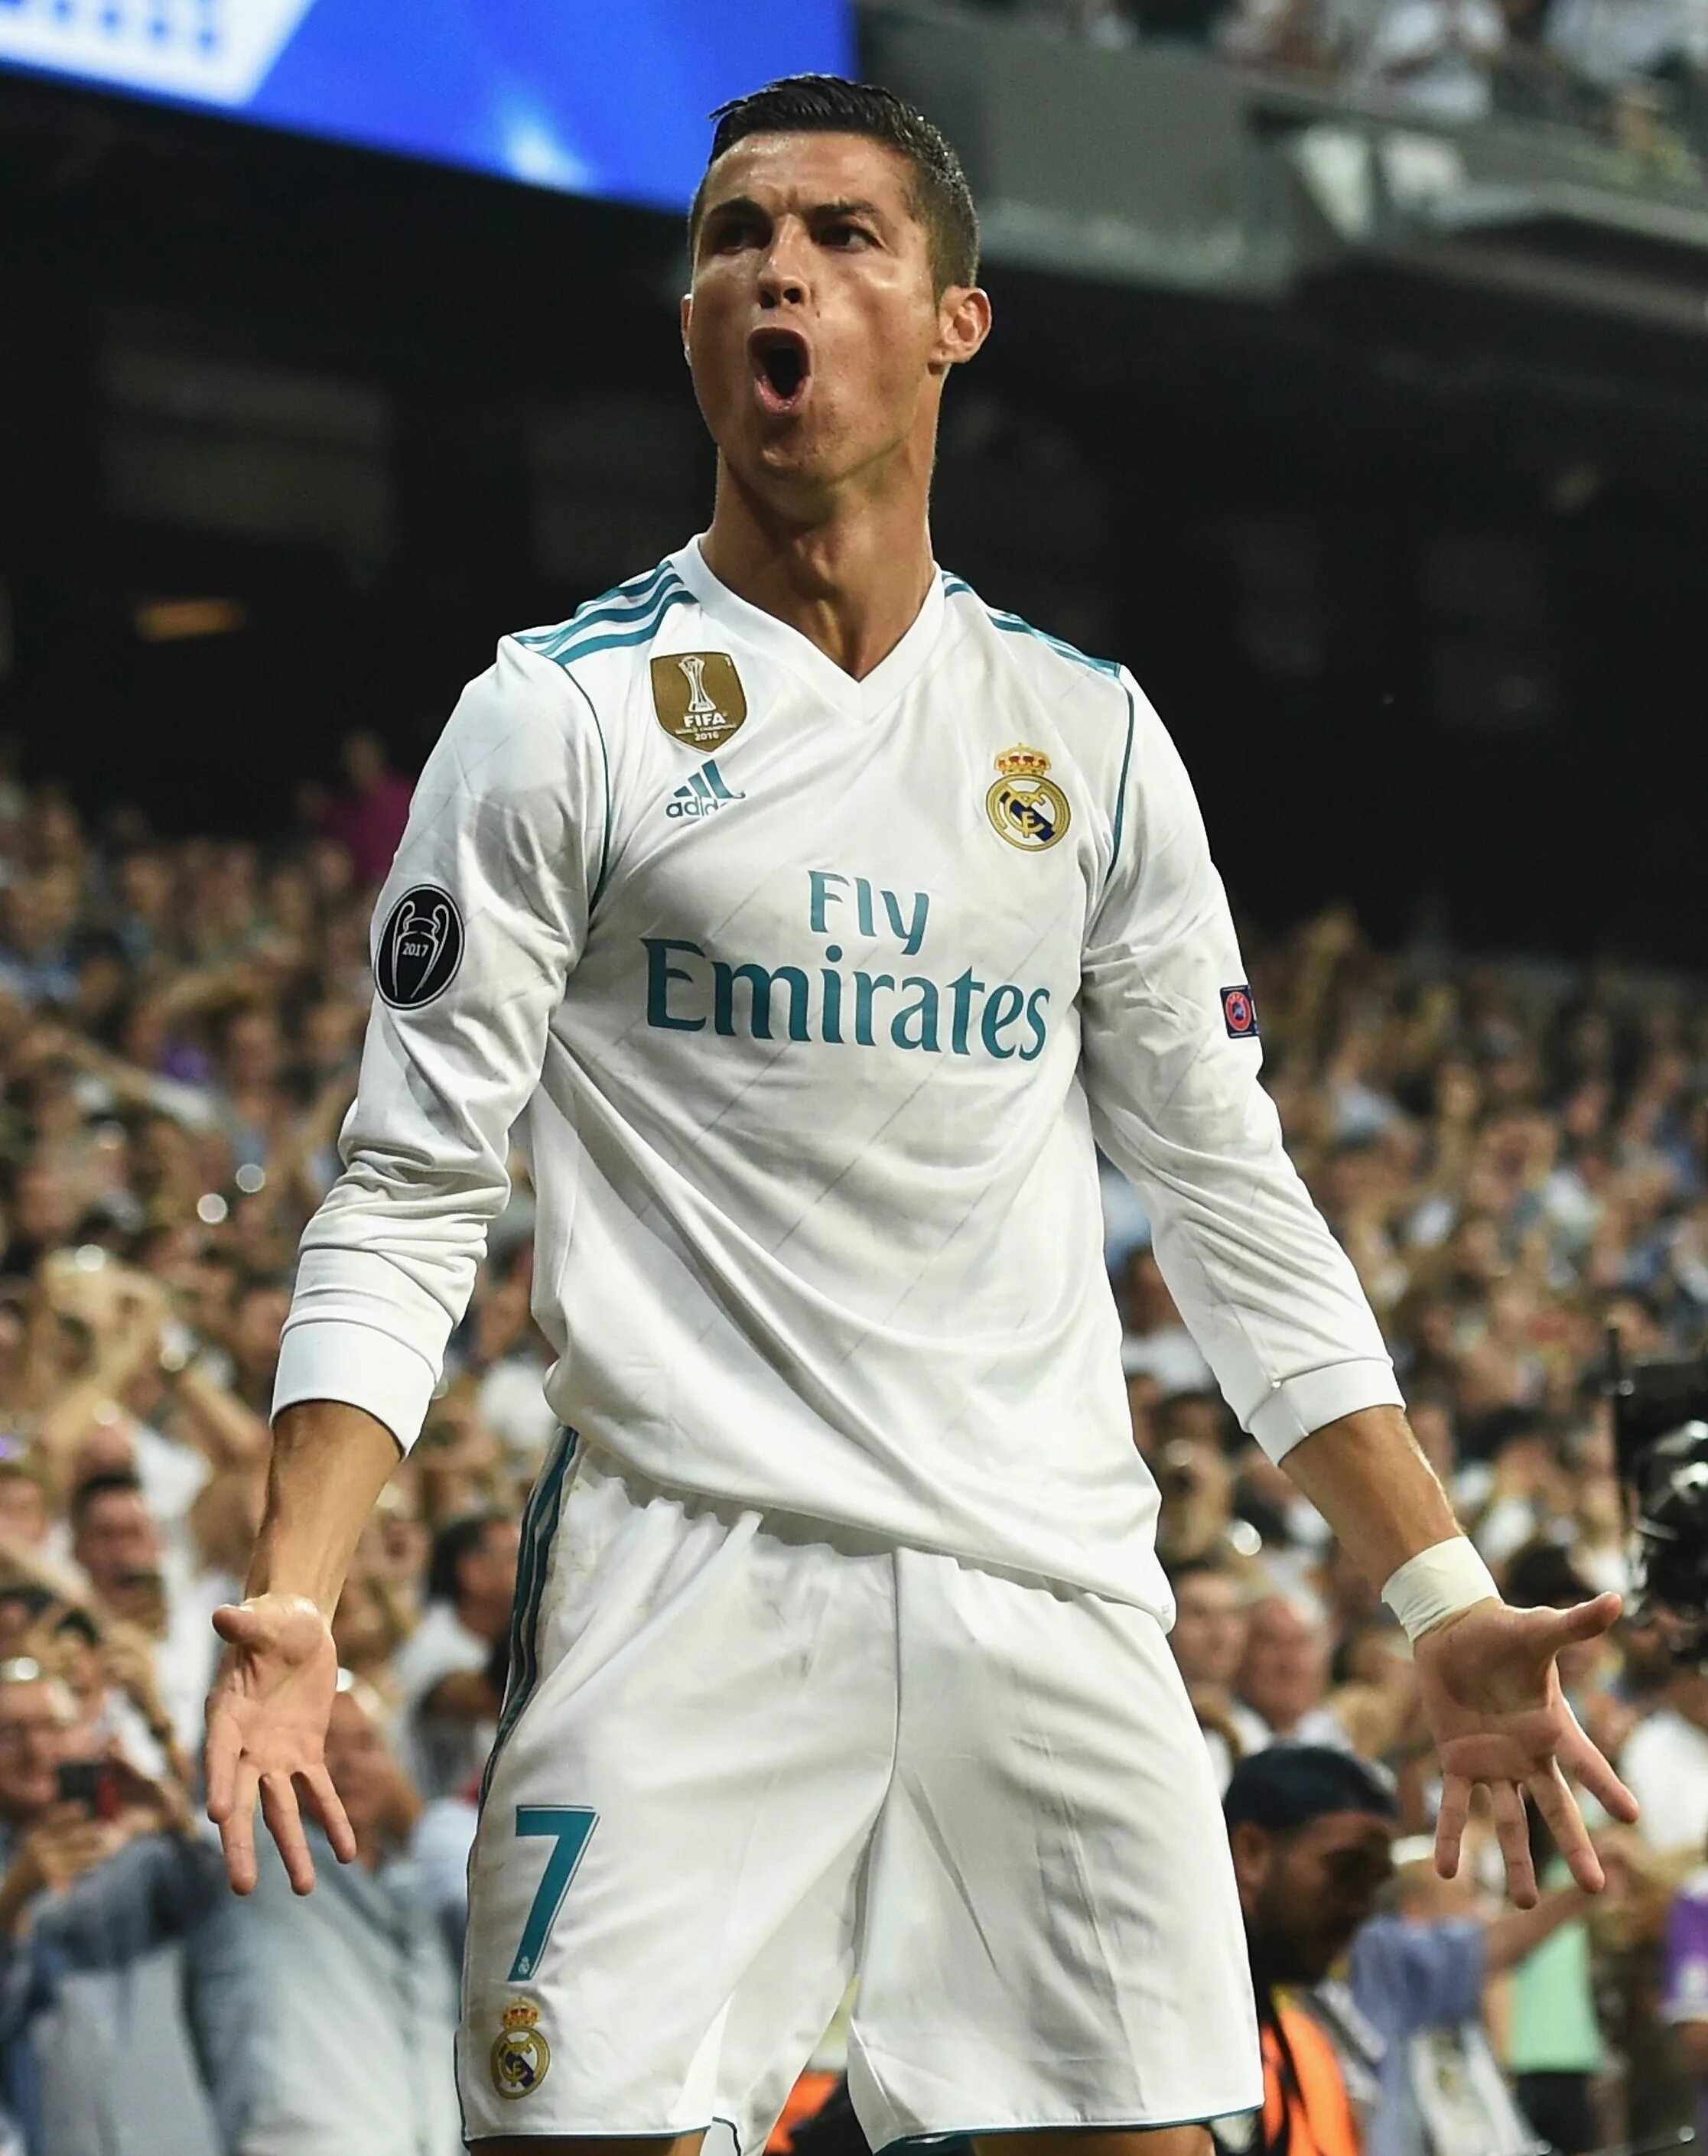 Роналдо в реале. Криштиану Роналду Реал Мадрид. Кристиано Роналдо Реал Мадрид. Cristiano Ronaldo Реал Мадрид. Криштиану Роналду Реал Мадрид 2017.